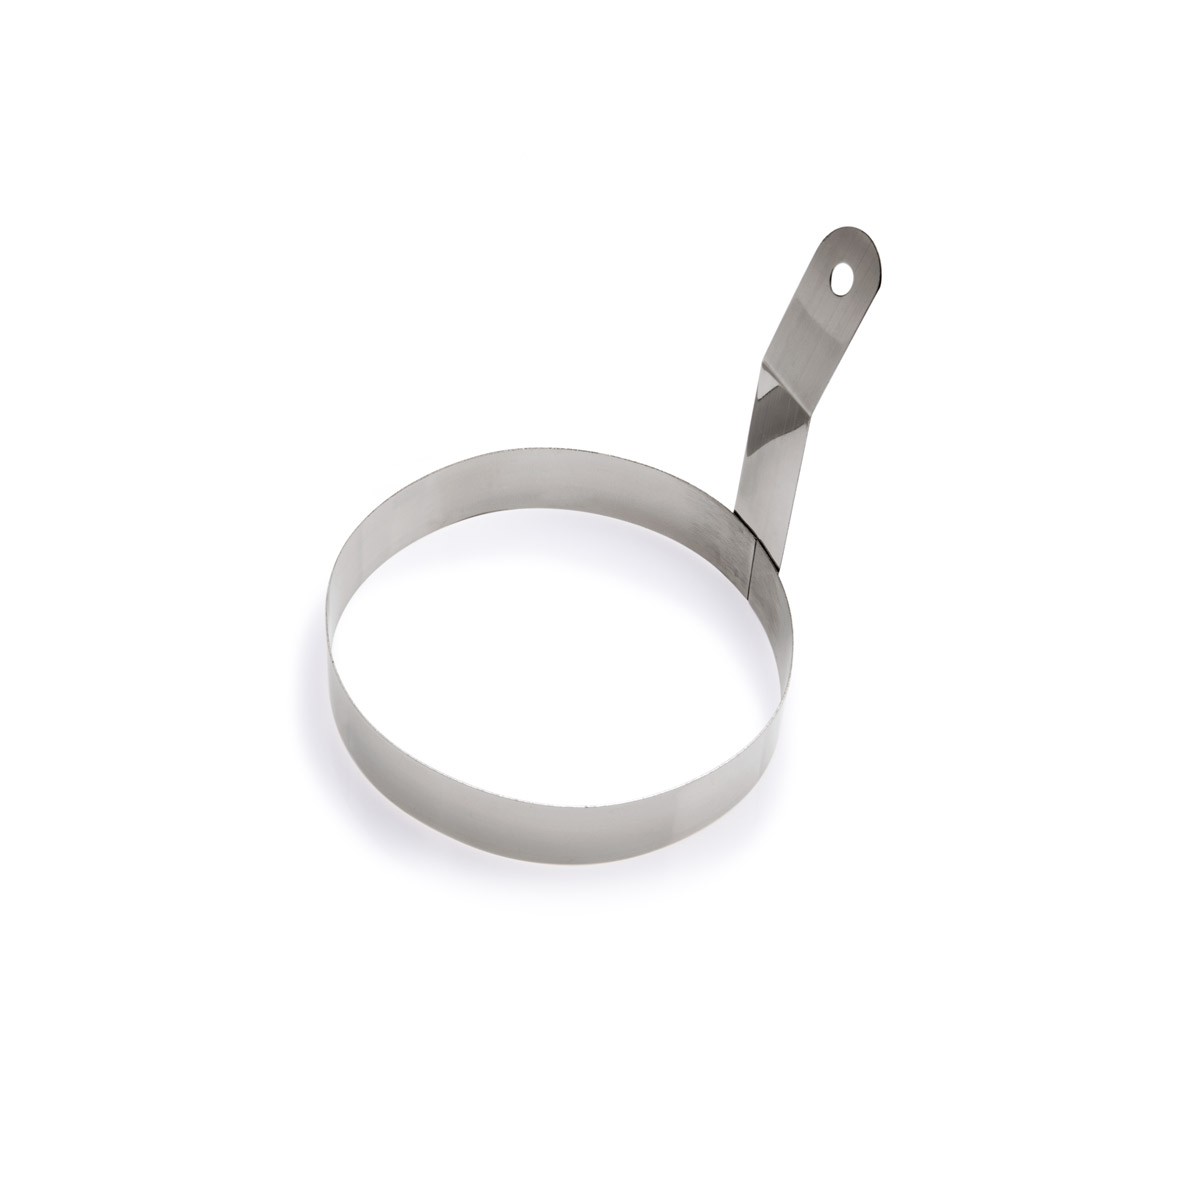 Bratring – Edelstahl – 10cm Durchmesser – Ideal für Spiegelei, Omle…